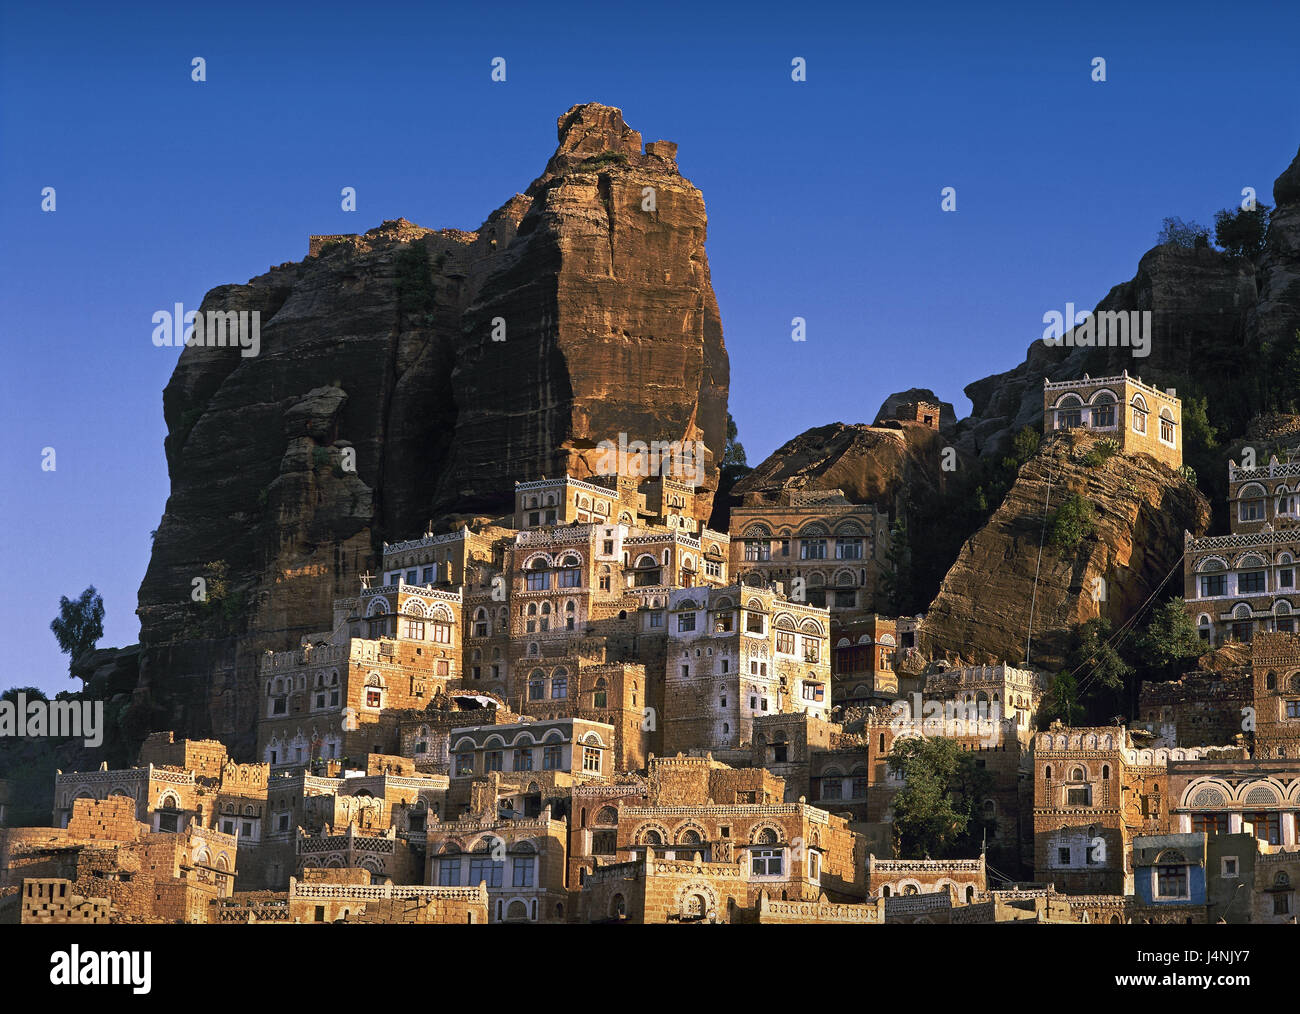 Jemen, Hadda, rock, Häuser, des Nahen Ostens, Ort, Dorf, Wohn Häuser, traditionell, Jemen, Osten, Architektur, historisch, mucky Gebäude, mucky Häuser, Gebäude, Berge, Stockfoto